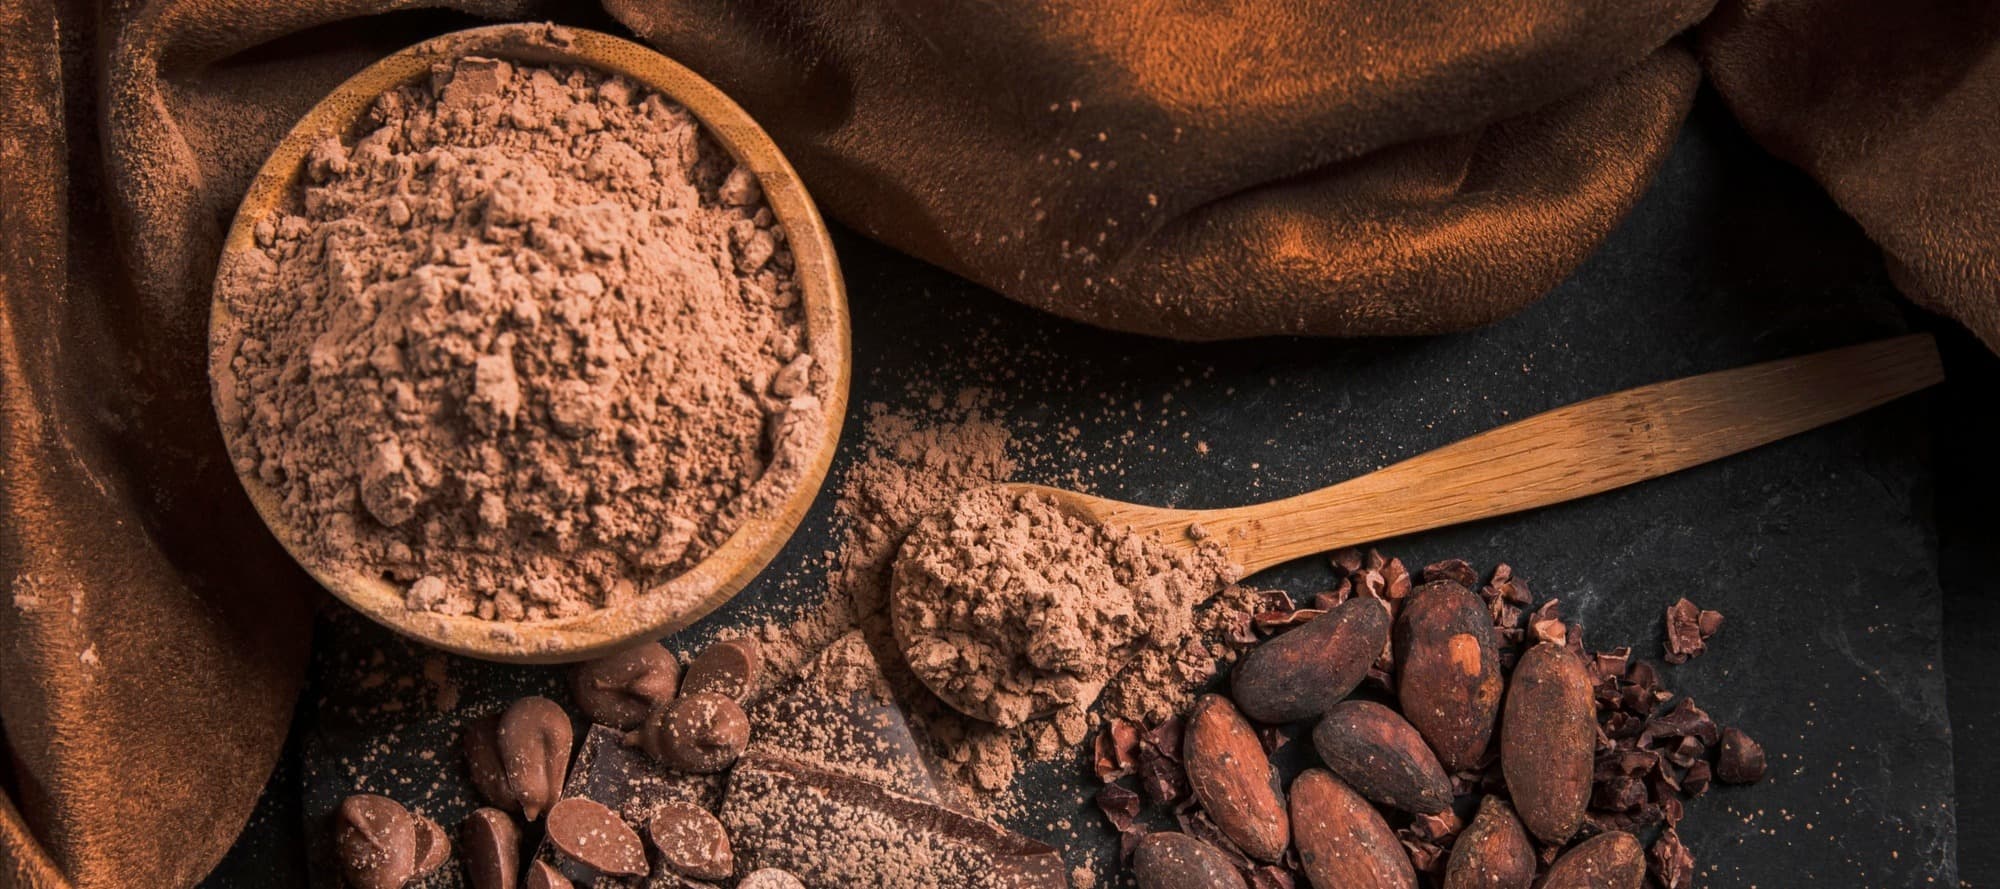 Фото новости: "Рекордные цены на какао приведут к подорожанию шоколада"